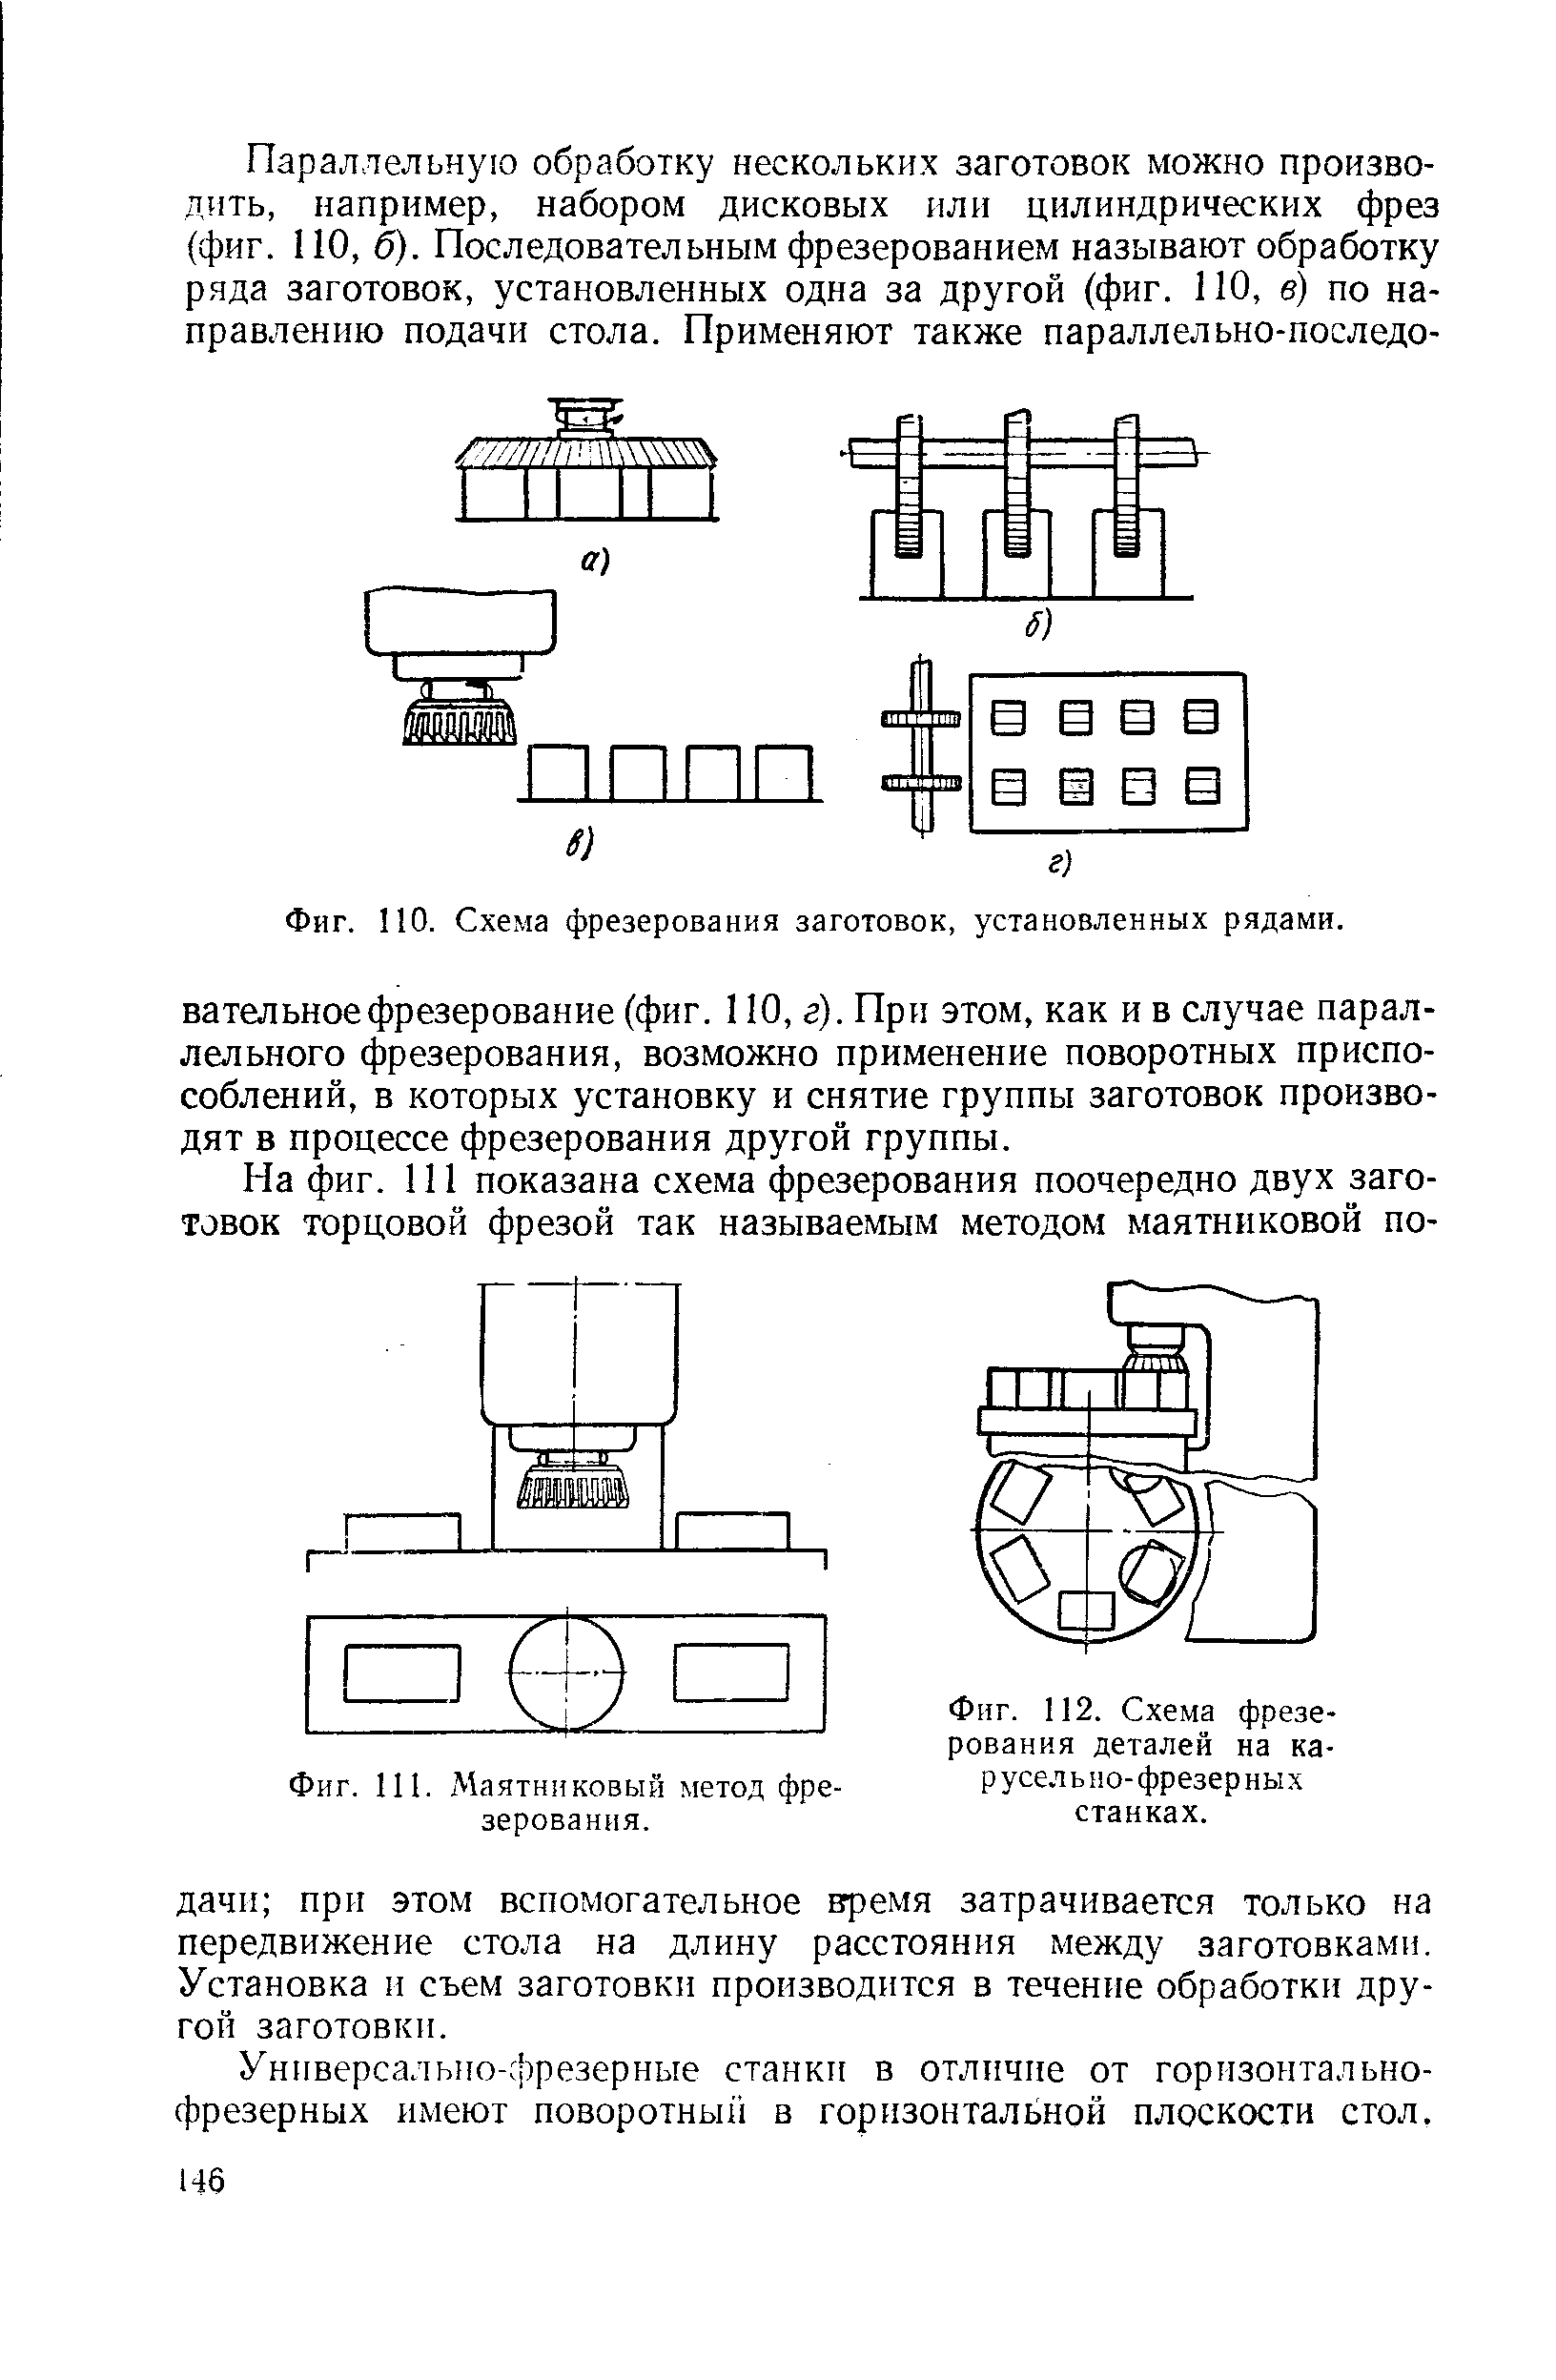 Фиг. 112. <a href="/info/185527">Схема фрезерования</a> деталей на карусельно-фрезерных станках.
